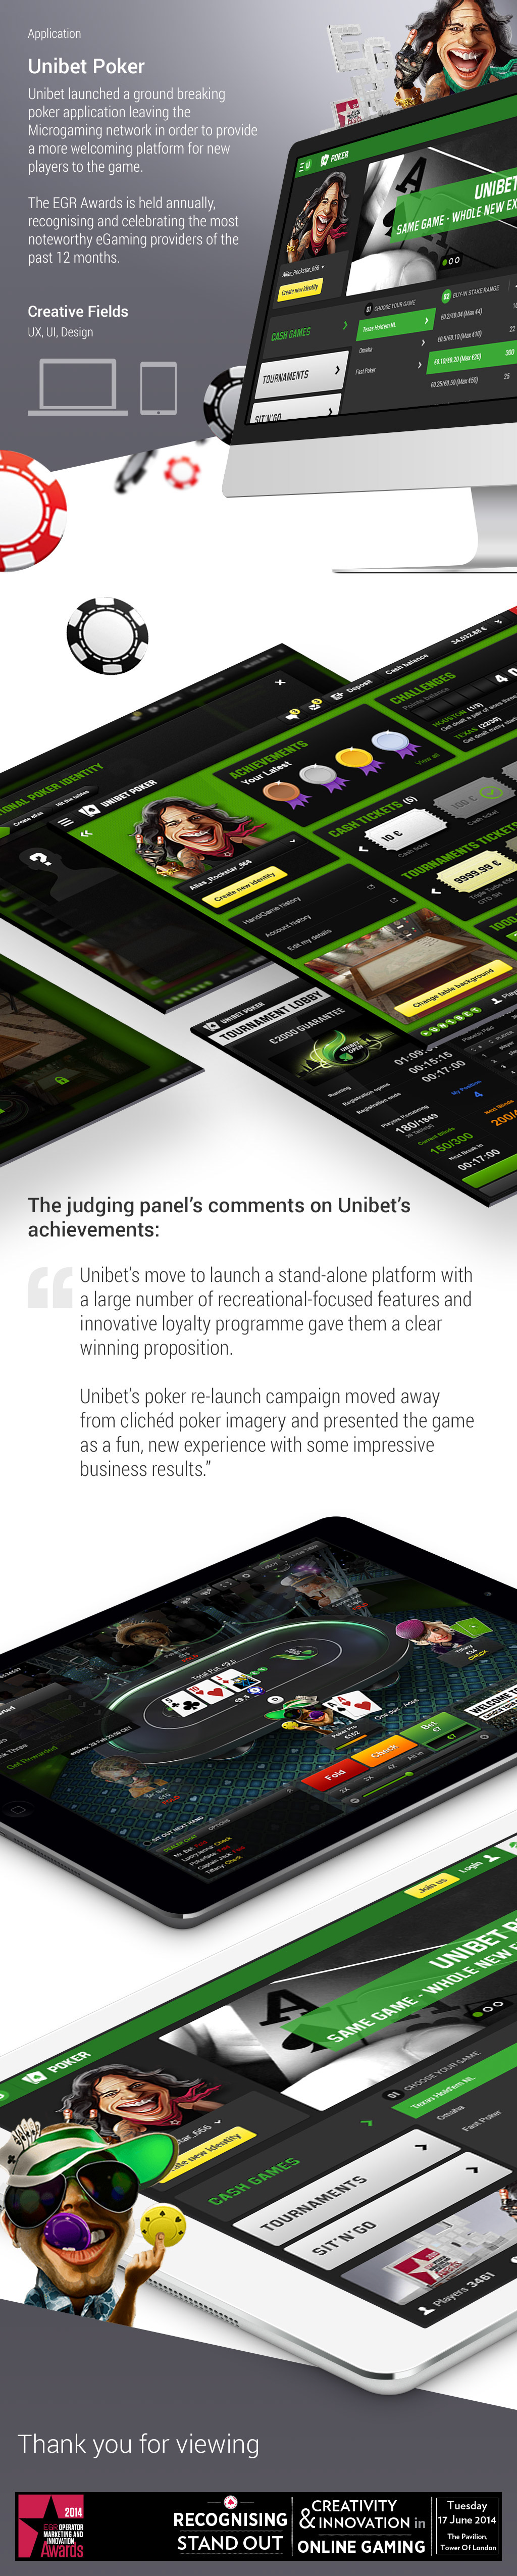 ux UI app design desktop iPad Games Poker